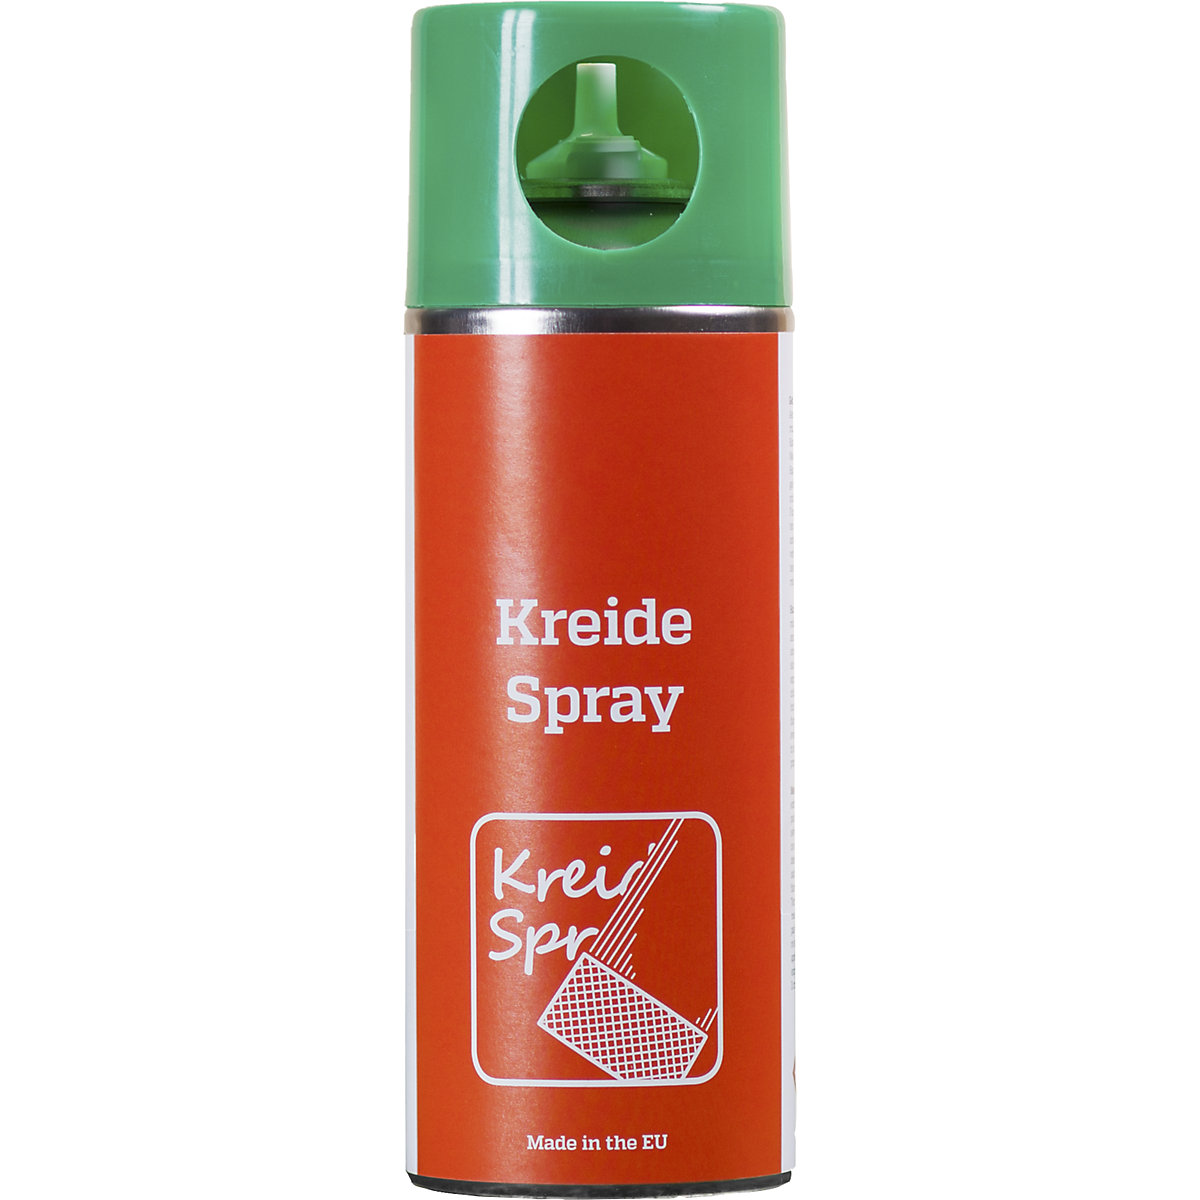 Kreidespray, Inhalt 400 ml, VE 6 Stk, grün-5